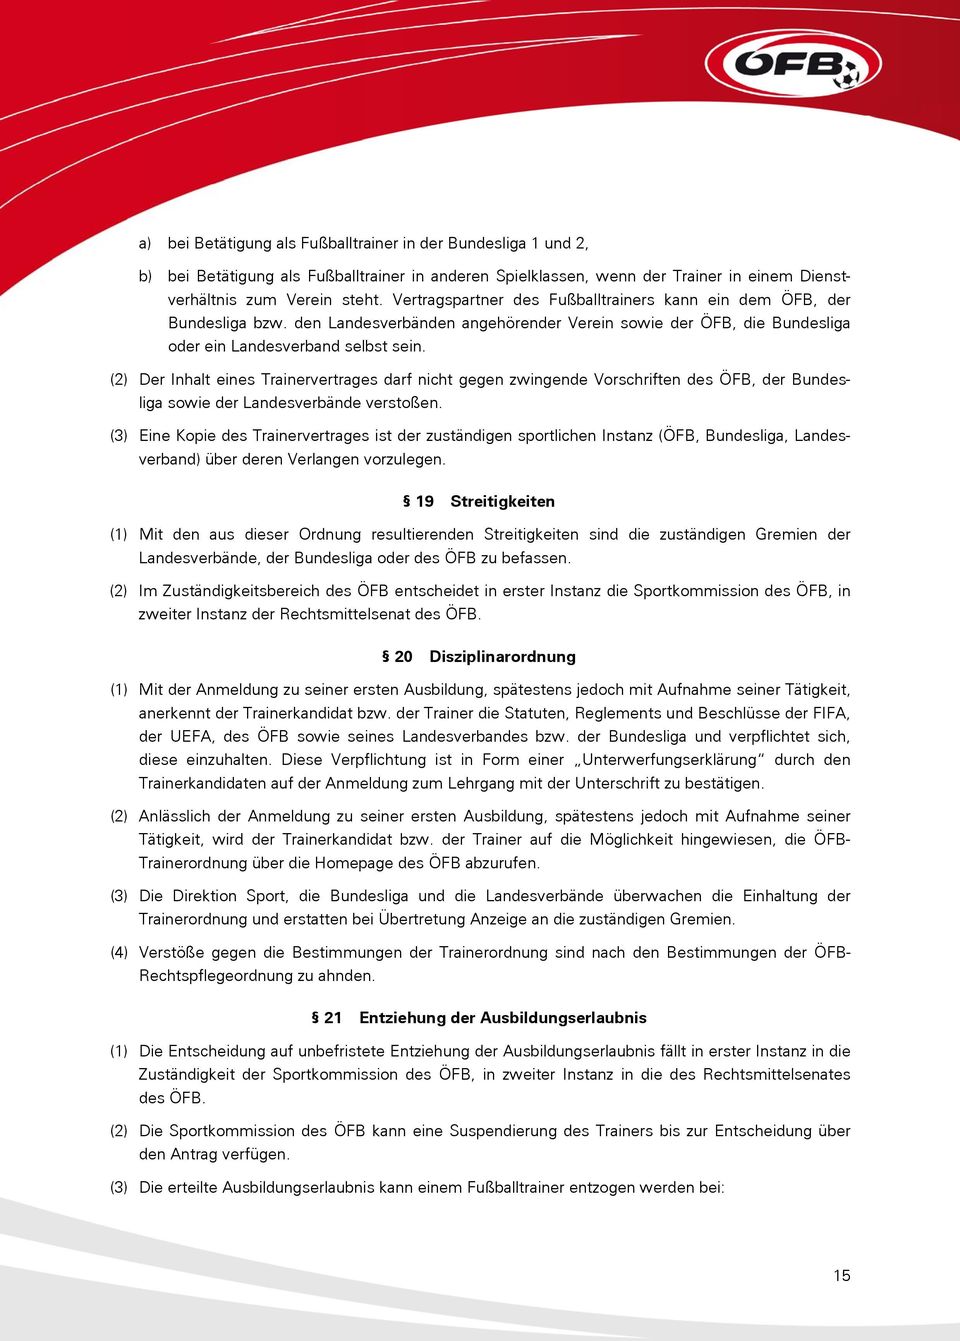 (2) Der Inhalt eines Trainervertrages darf nicht gegen zwingende Vorschriften des ÖFB, der Bundesliga sowie der Landesverbände verstoßen.